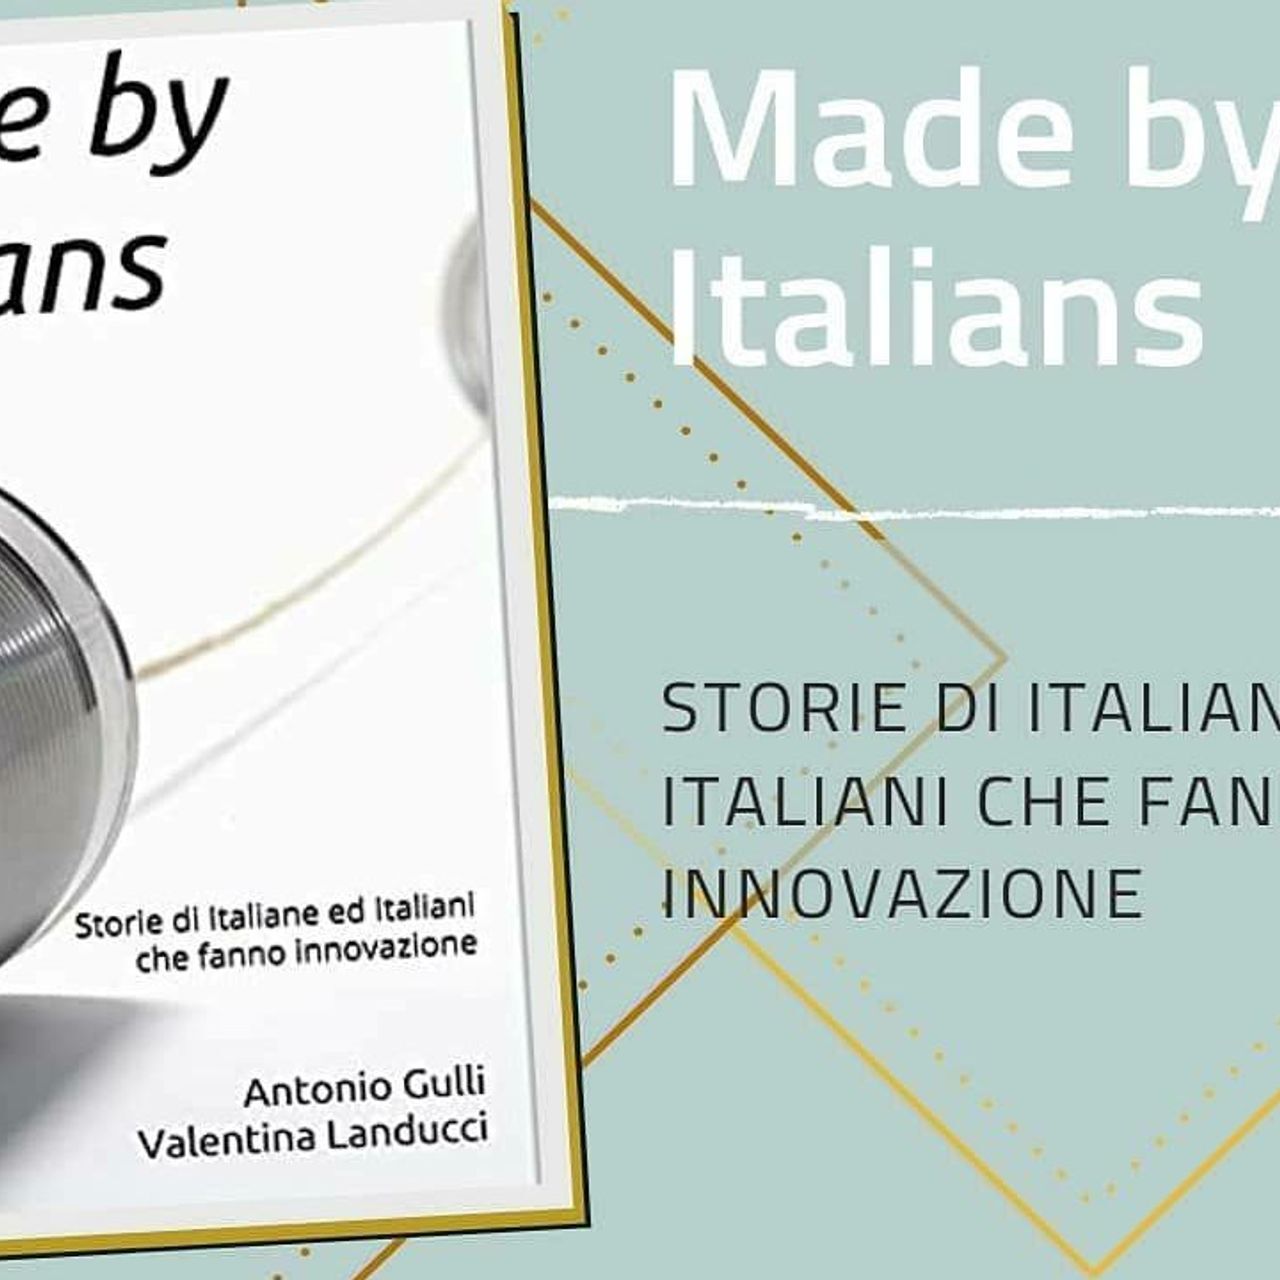 Η παρουσίαση του βιβλίου "Made by Italians Stories of Italy Women and Italians who innovate"